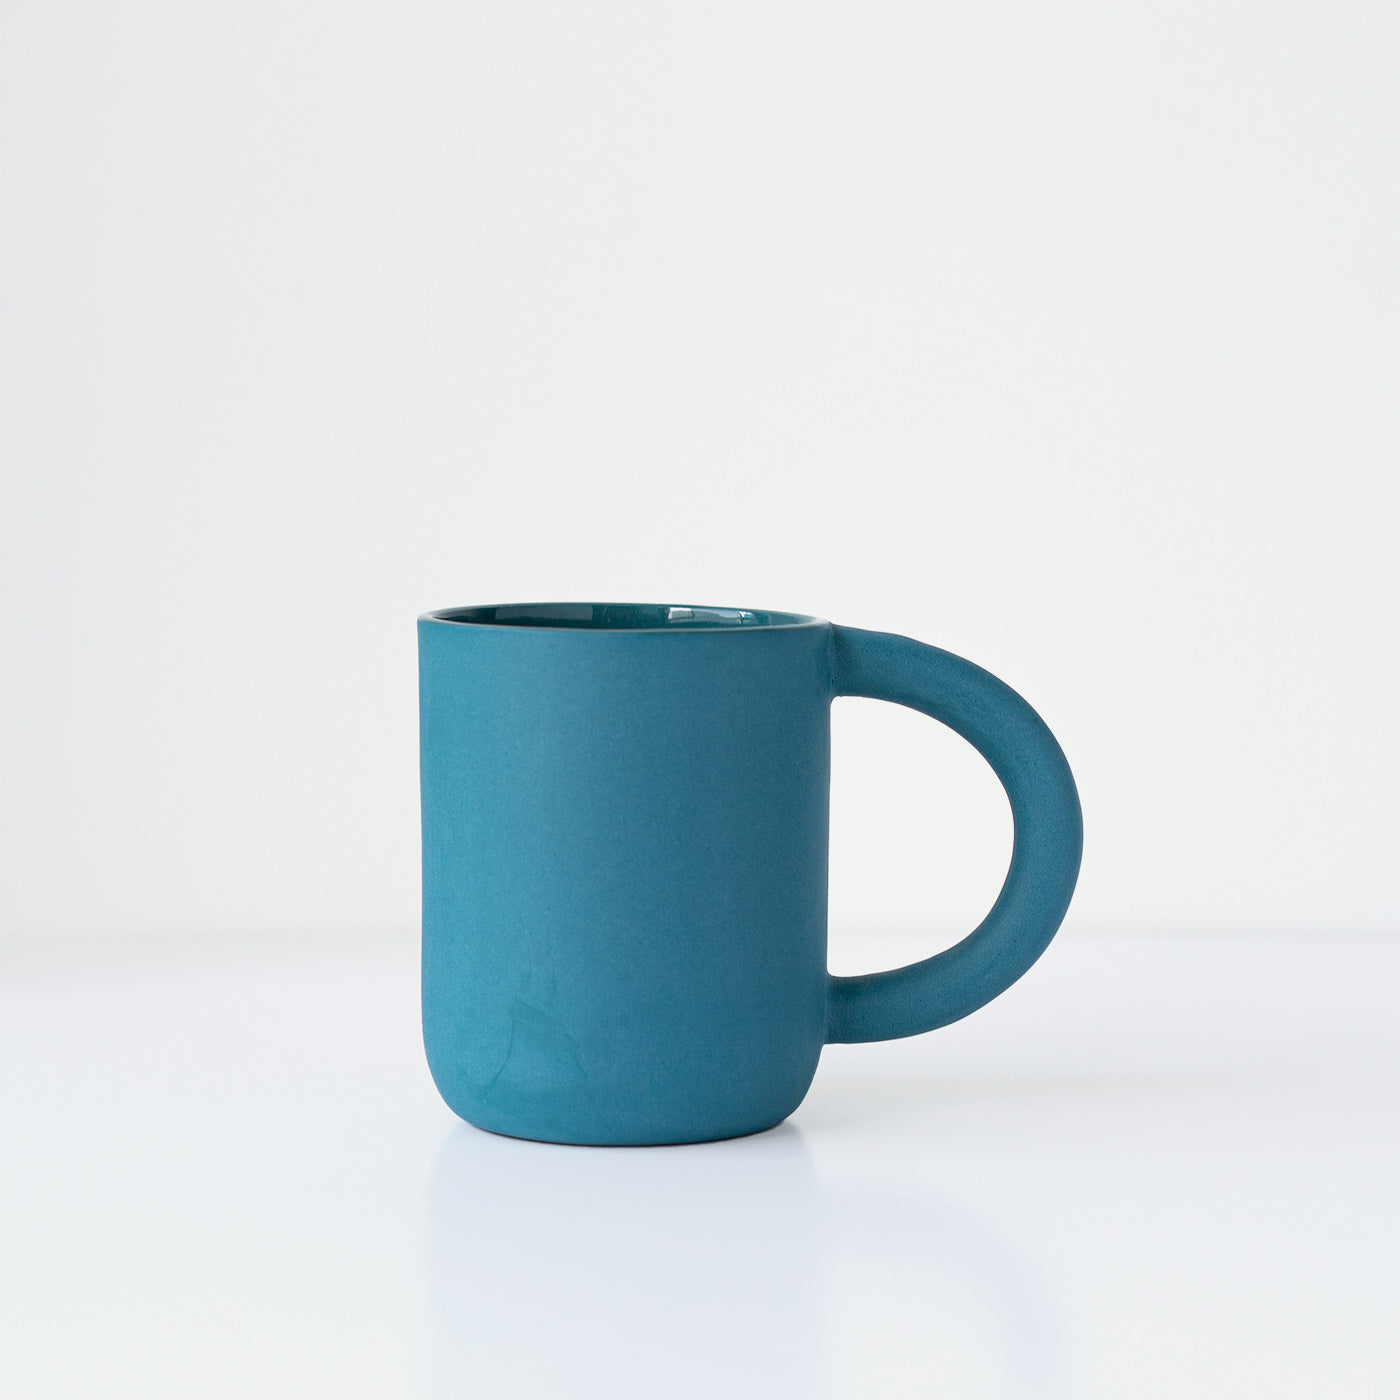 laureanne kootstra design hand made ceramic blue porcelain mug